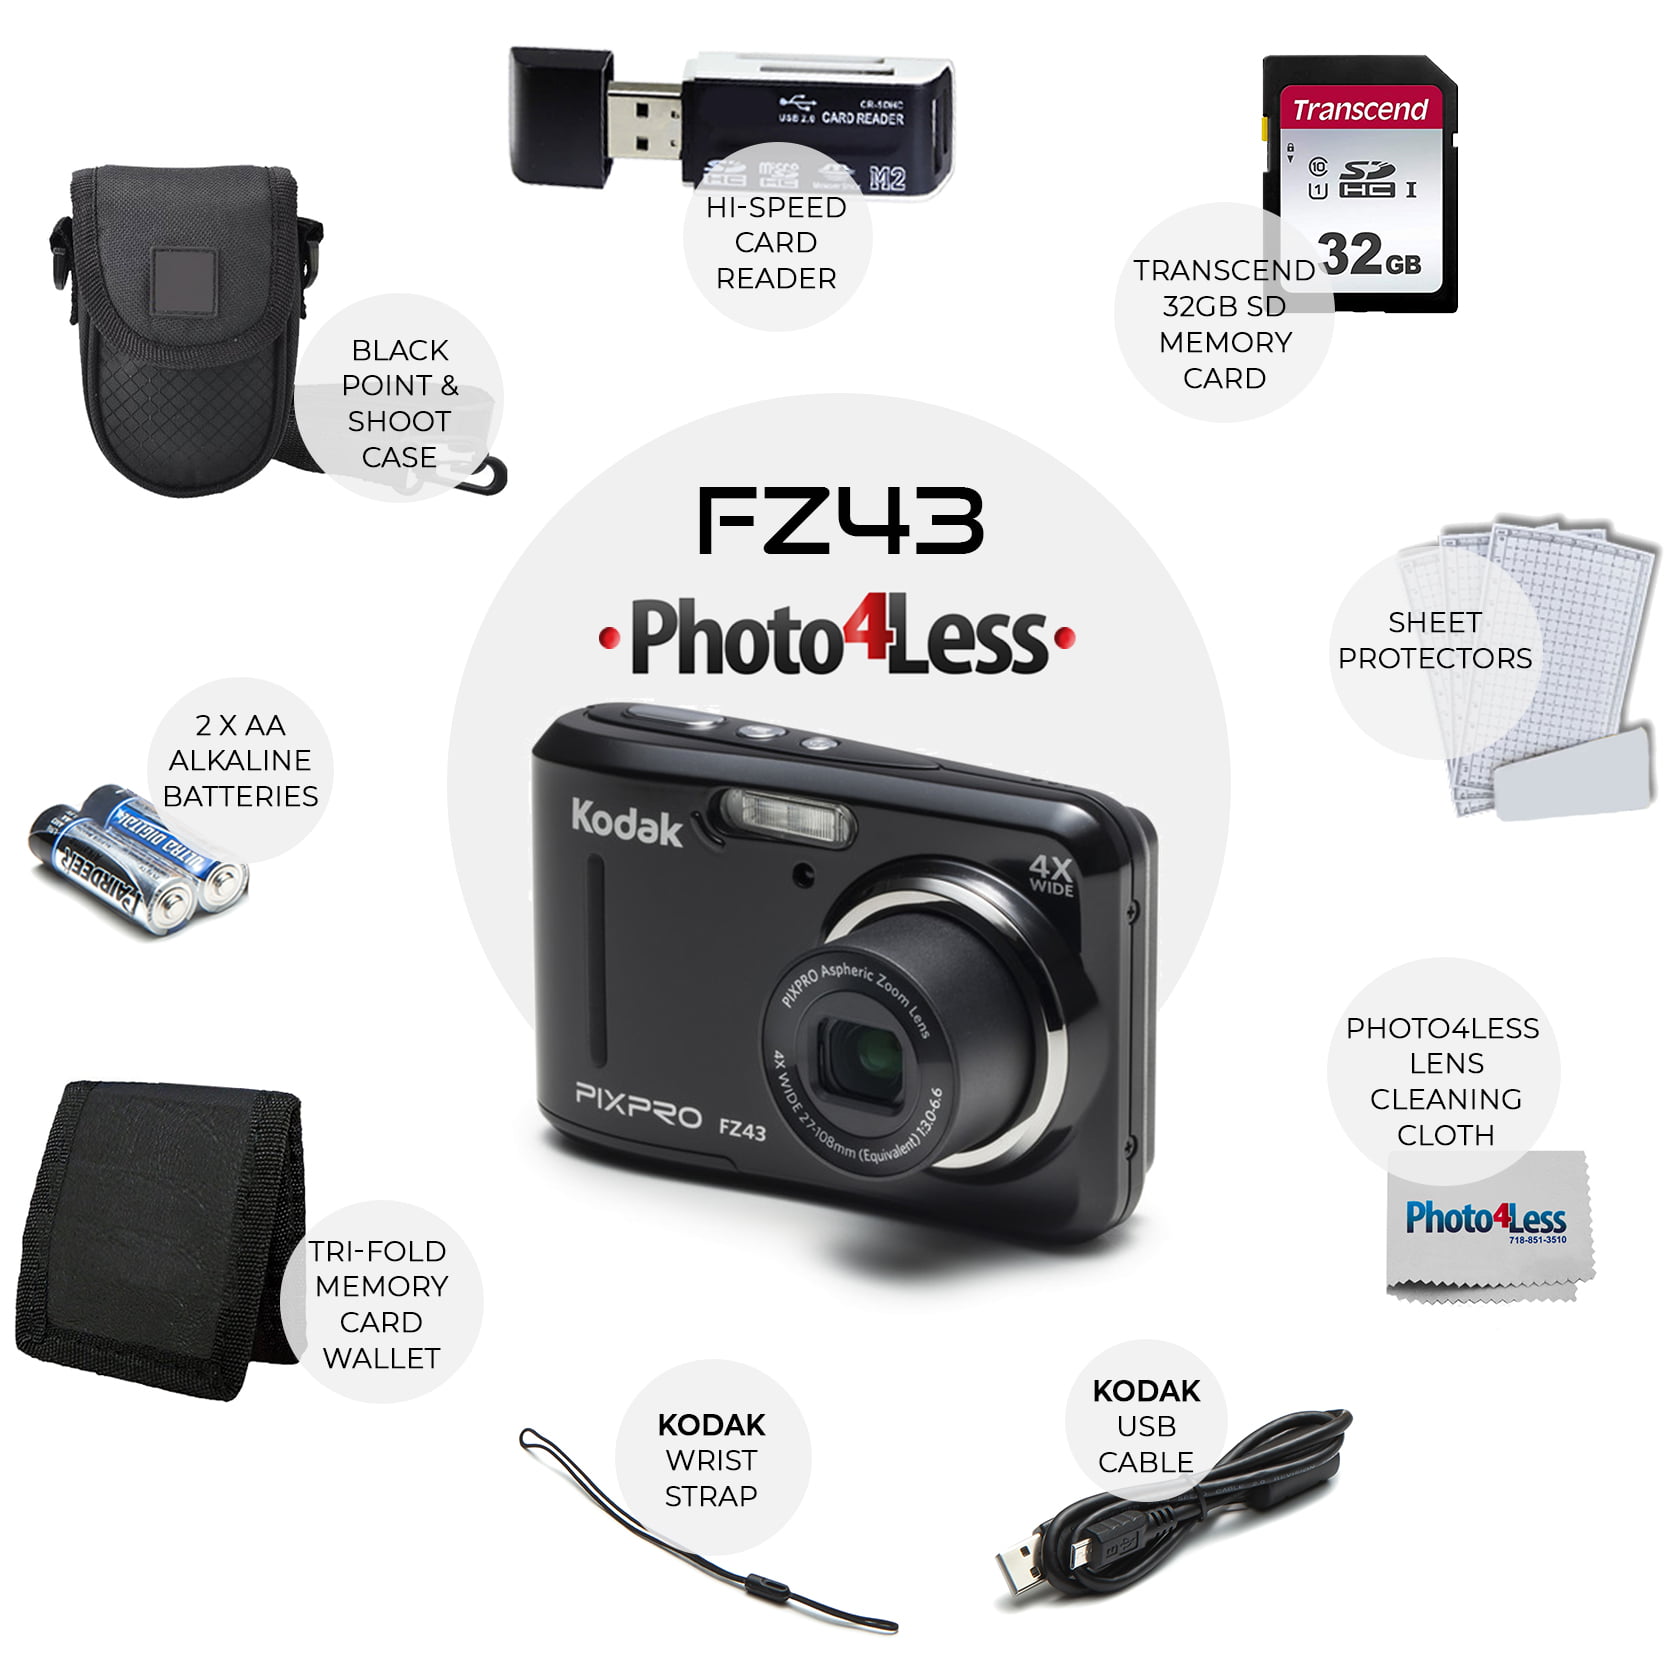 Kodak PIXPRO FZ55 Digital Camera Red +Lexar 32GB Memory Card + Bag